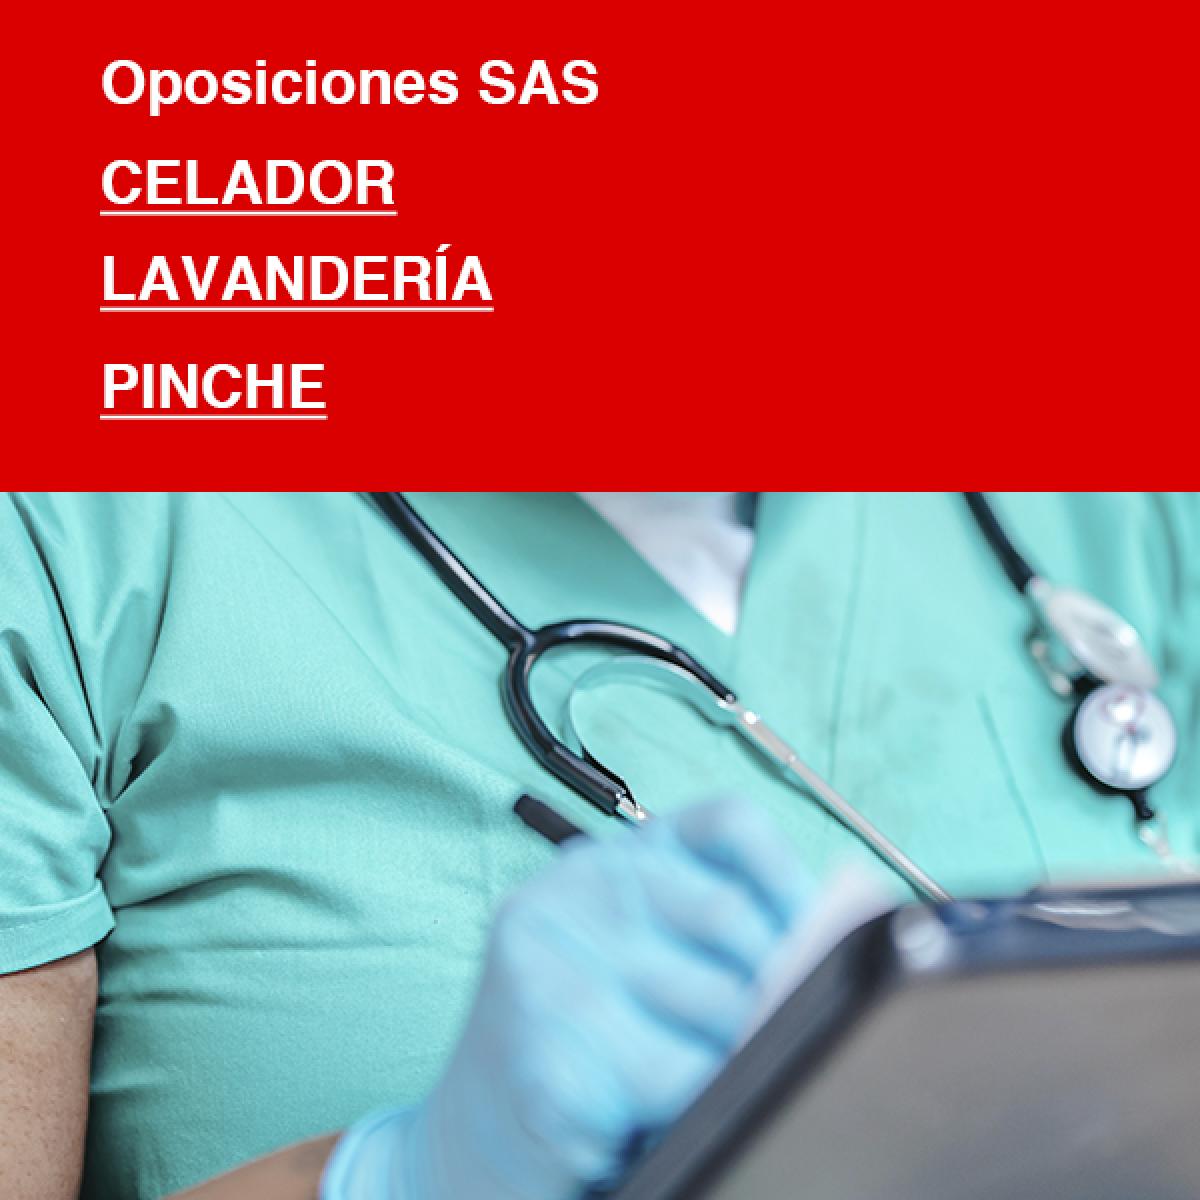 Celador, Lavandería, Pinche, Oposiciones SAS